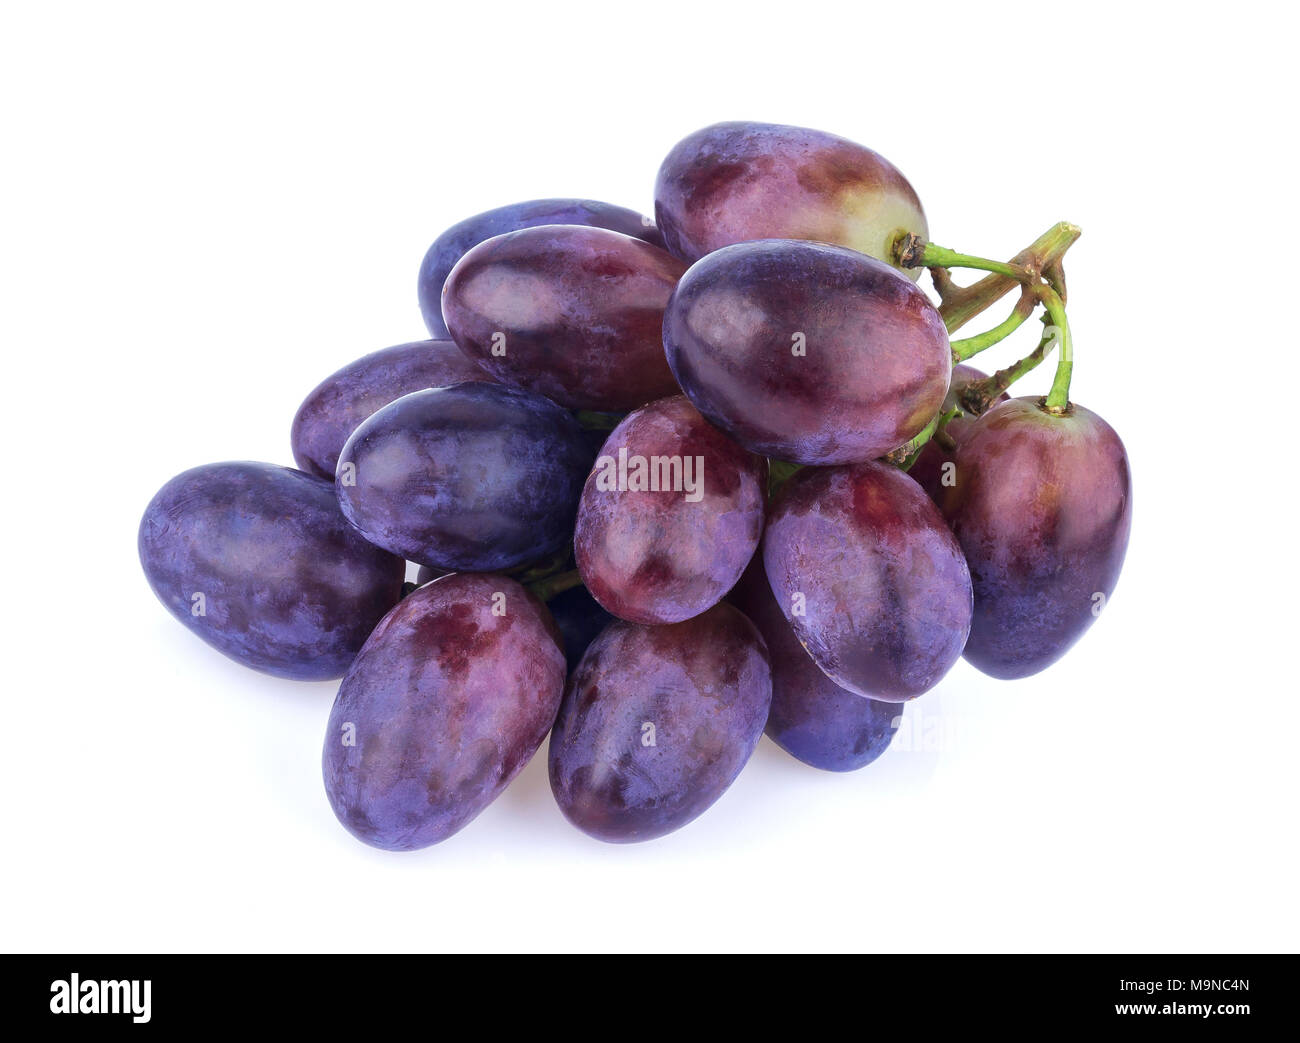 Black grape isolated on white background Stock Photo